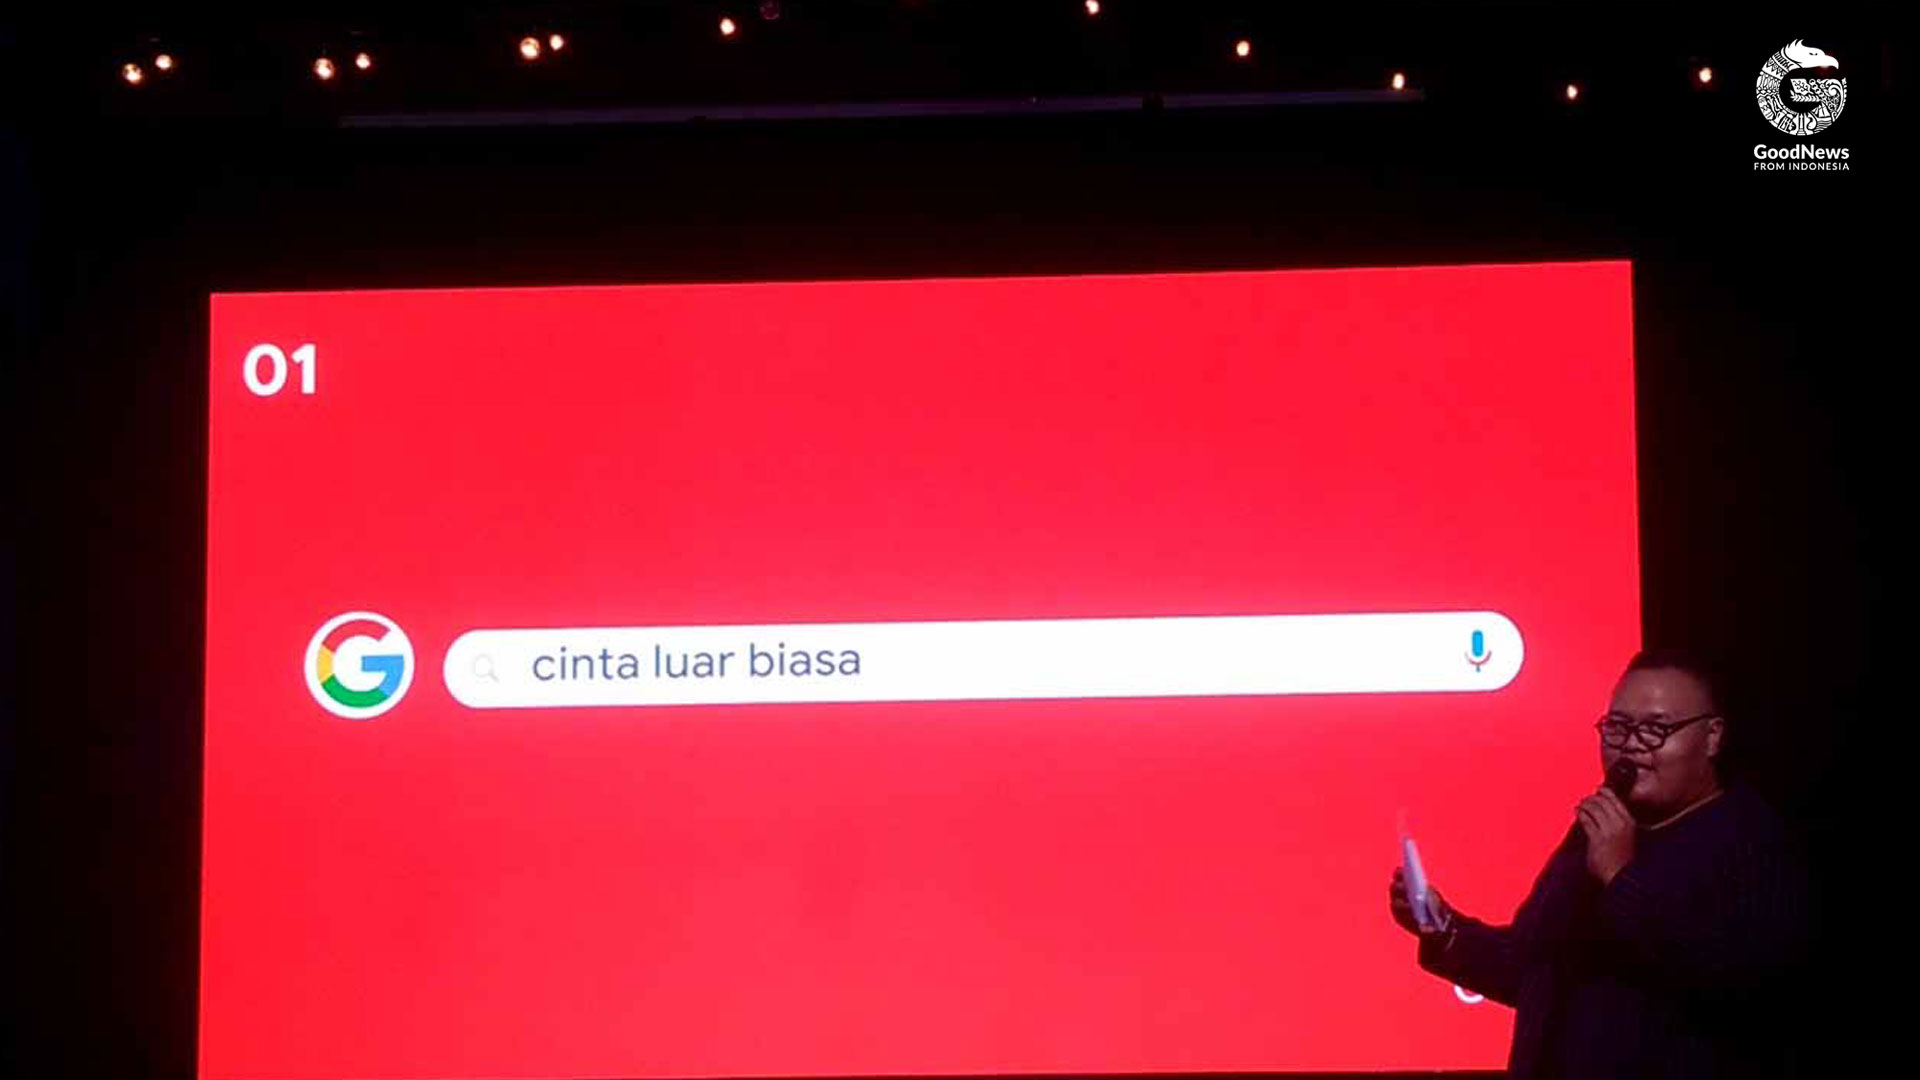 Pembawa acara Reza Chandika mengumumkan Cinta Luar Biasa sebagai kata kunci terpopuler di 2019 | Foto: Dessy Astuti/GNFI